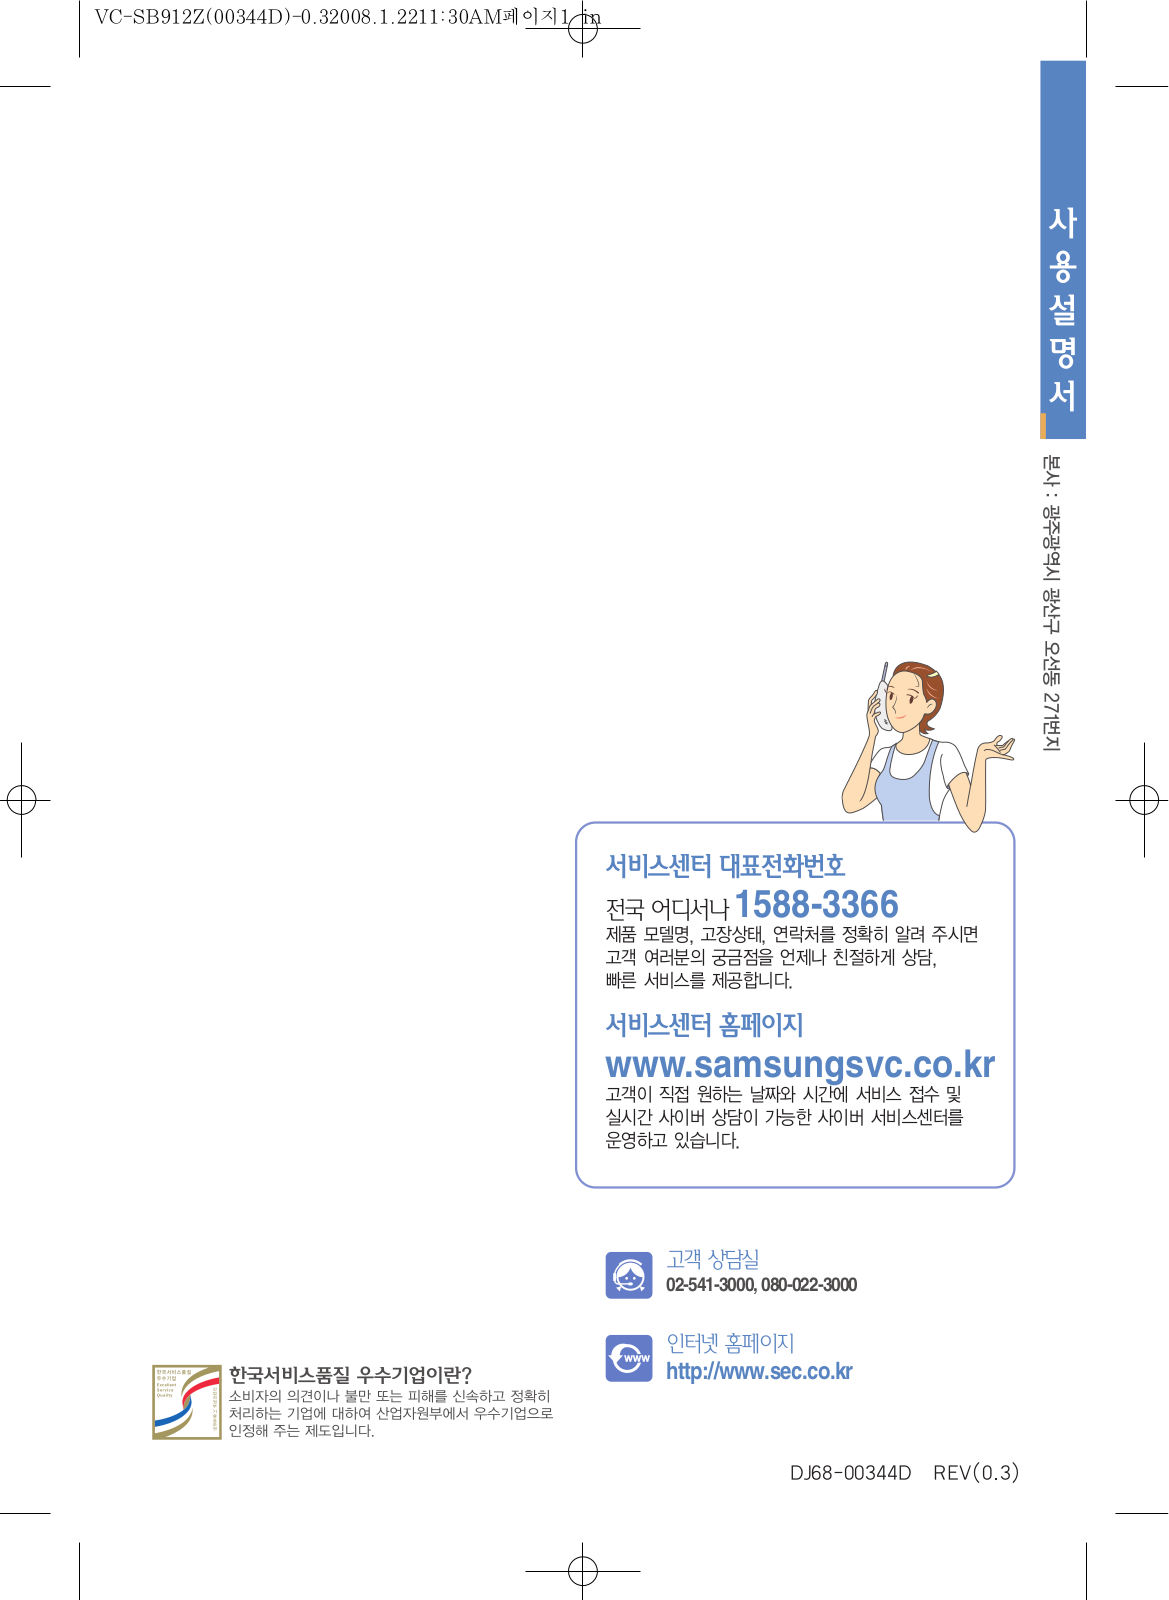 Samsung VC-SB912Z User Manual